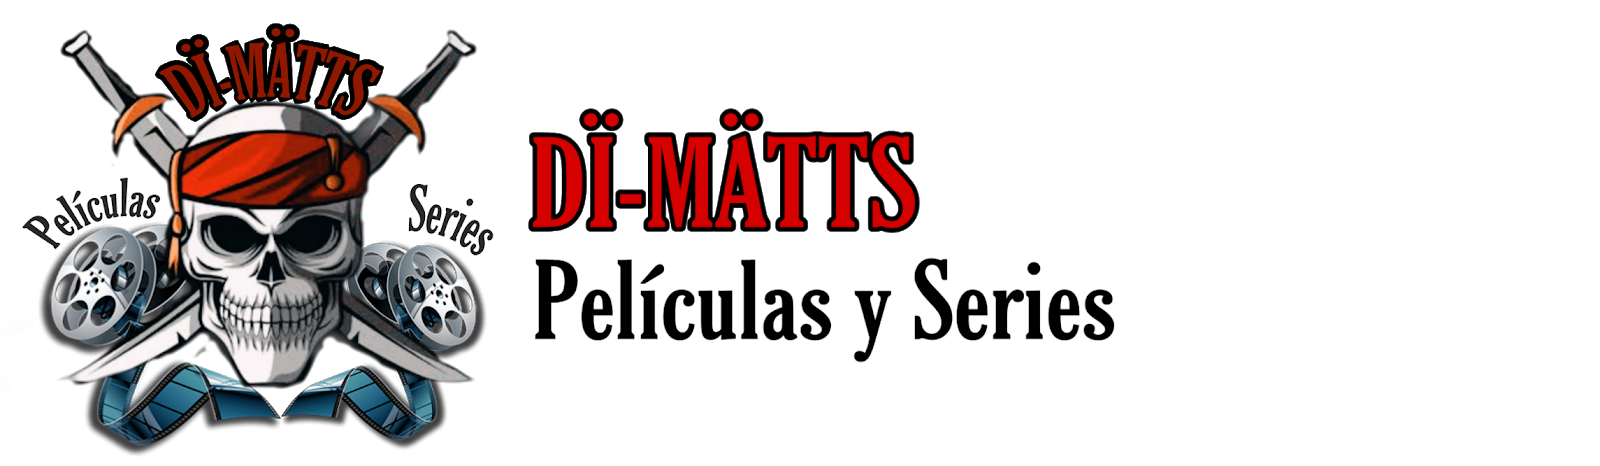 Di-Matts Peliculas y Series